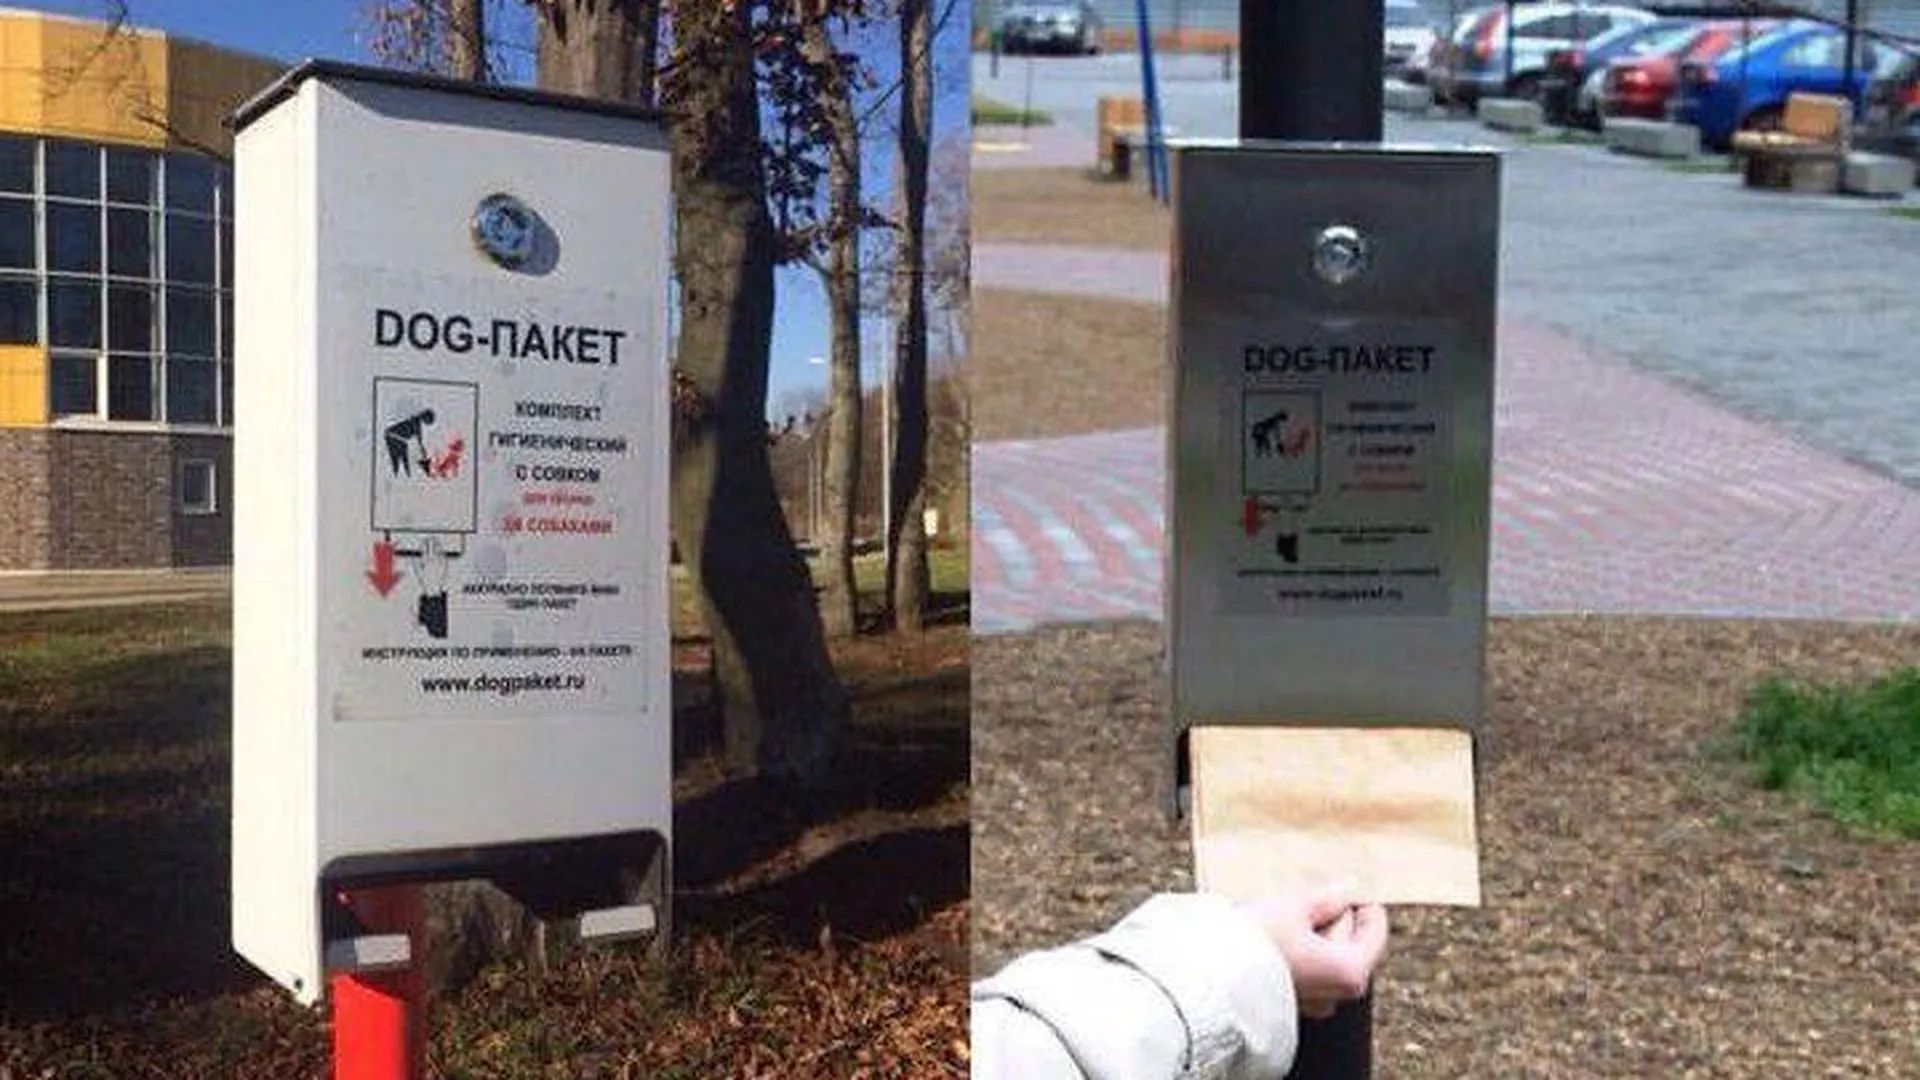 Ящики с дог-пакетами для выгула собак устанавливают в Химках